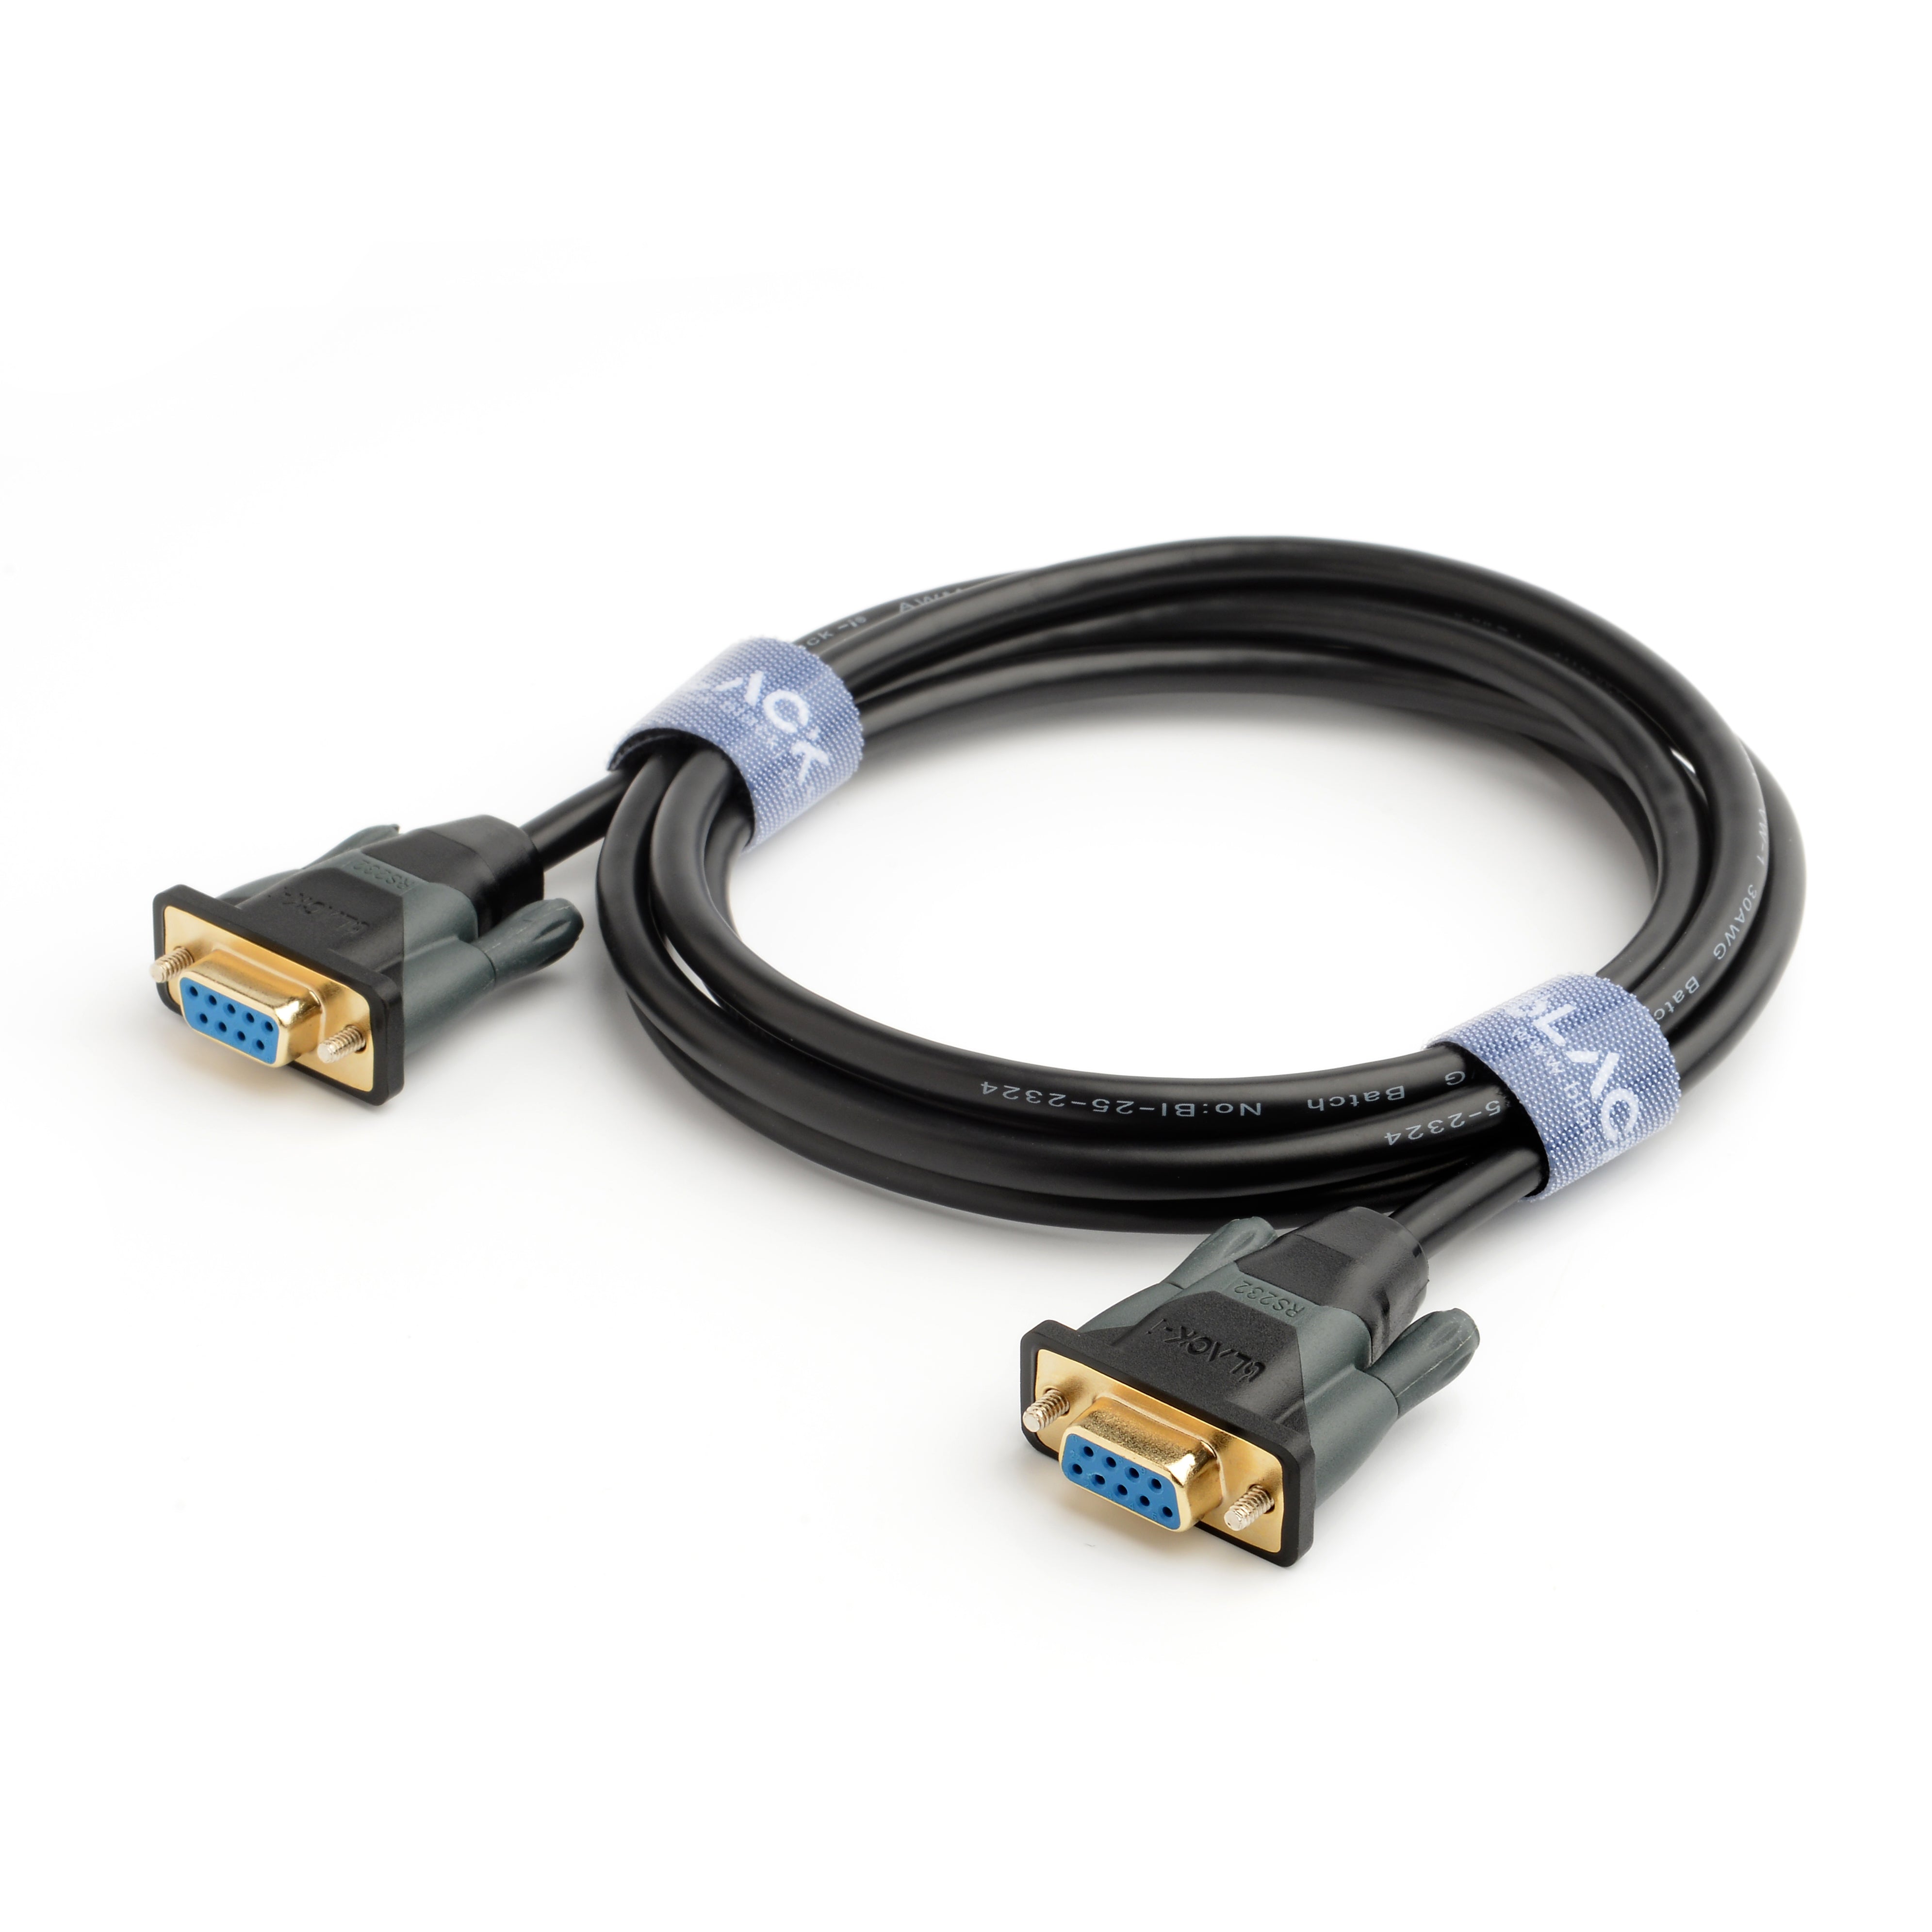 DB9 serial 9 pin cable